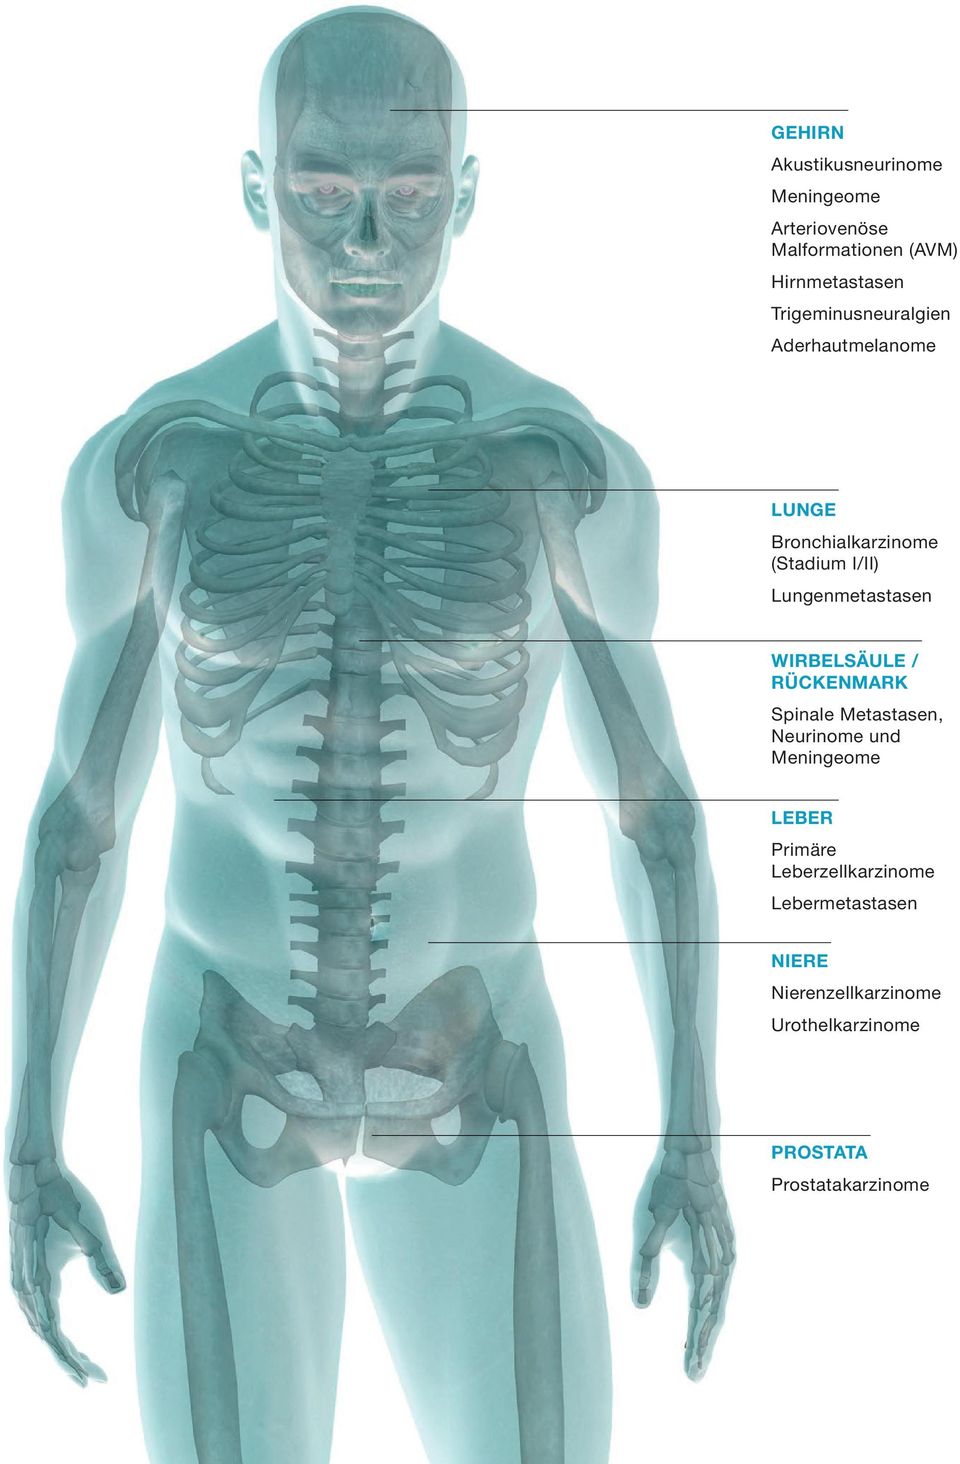 Lungenmetastasen WIRBELSÄULE / RÜCKENMARK Spinale Metastasen, Neurinome und Meningeome LEBER